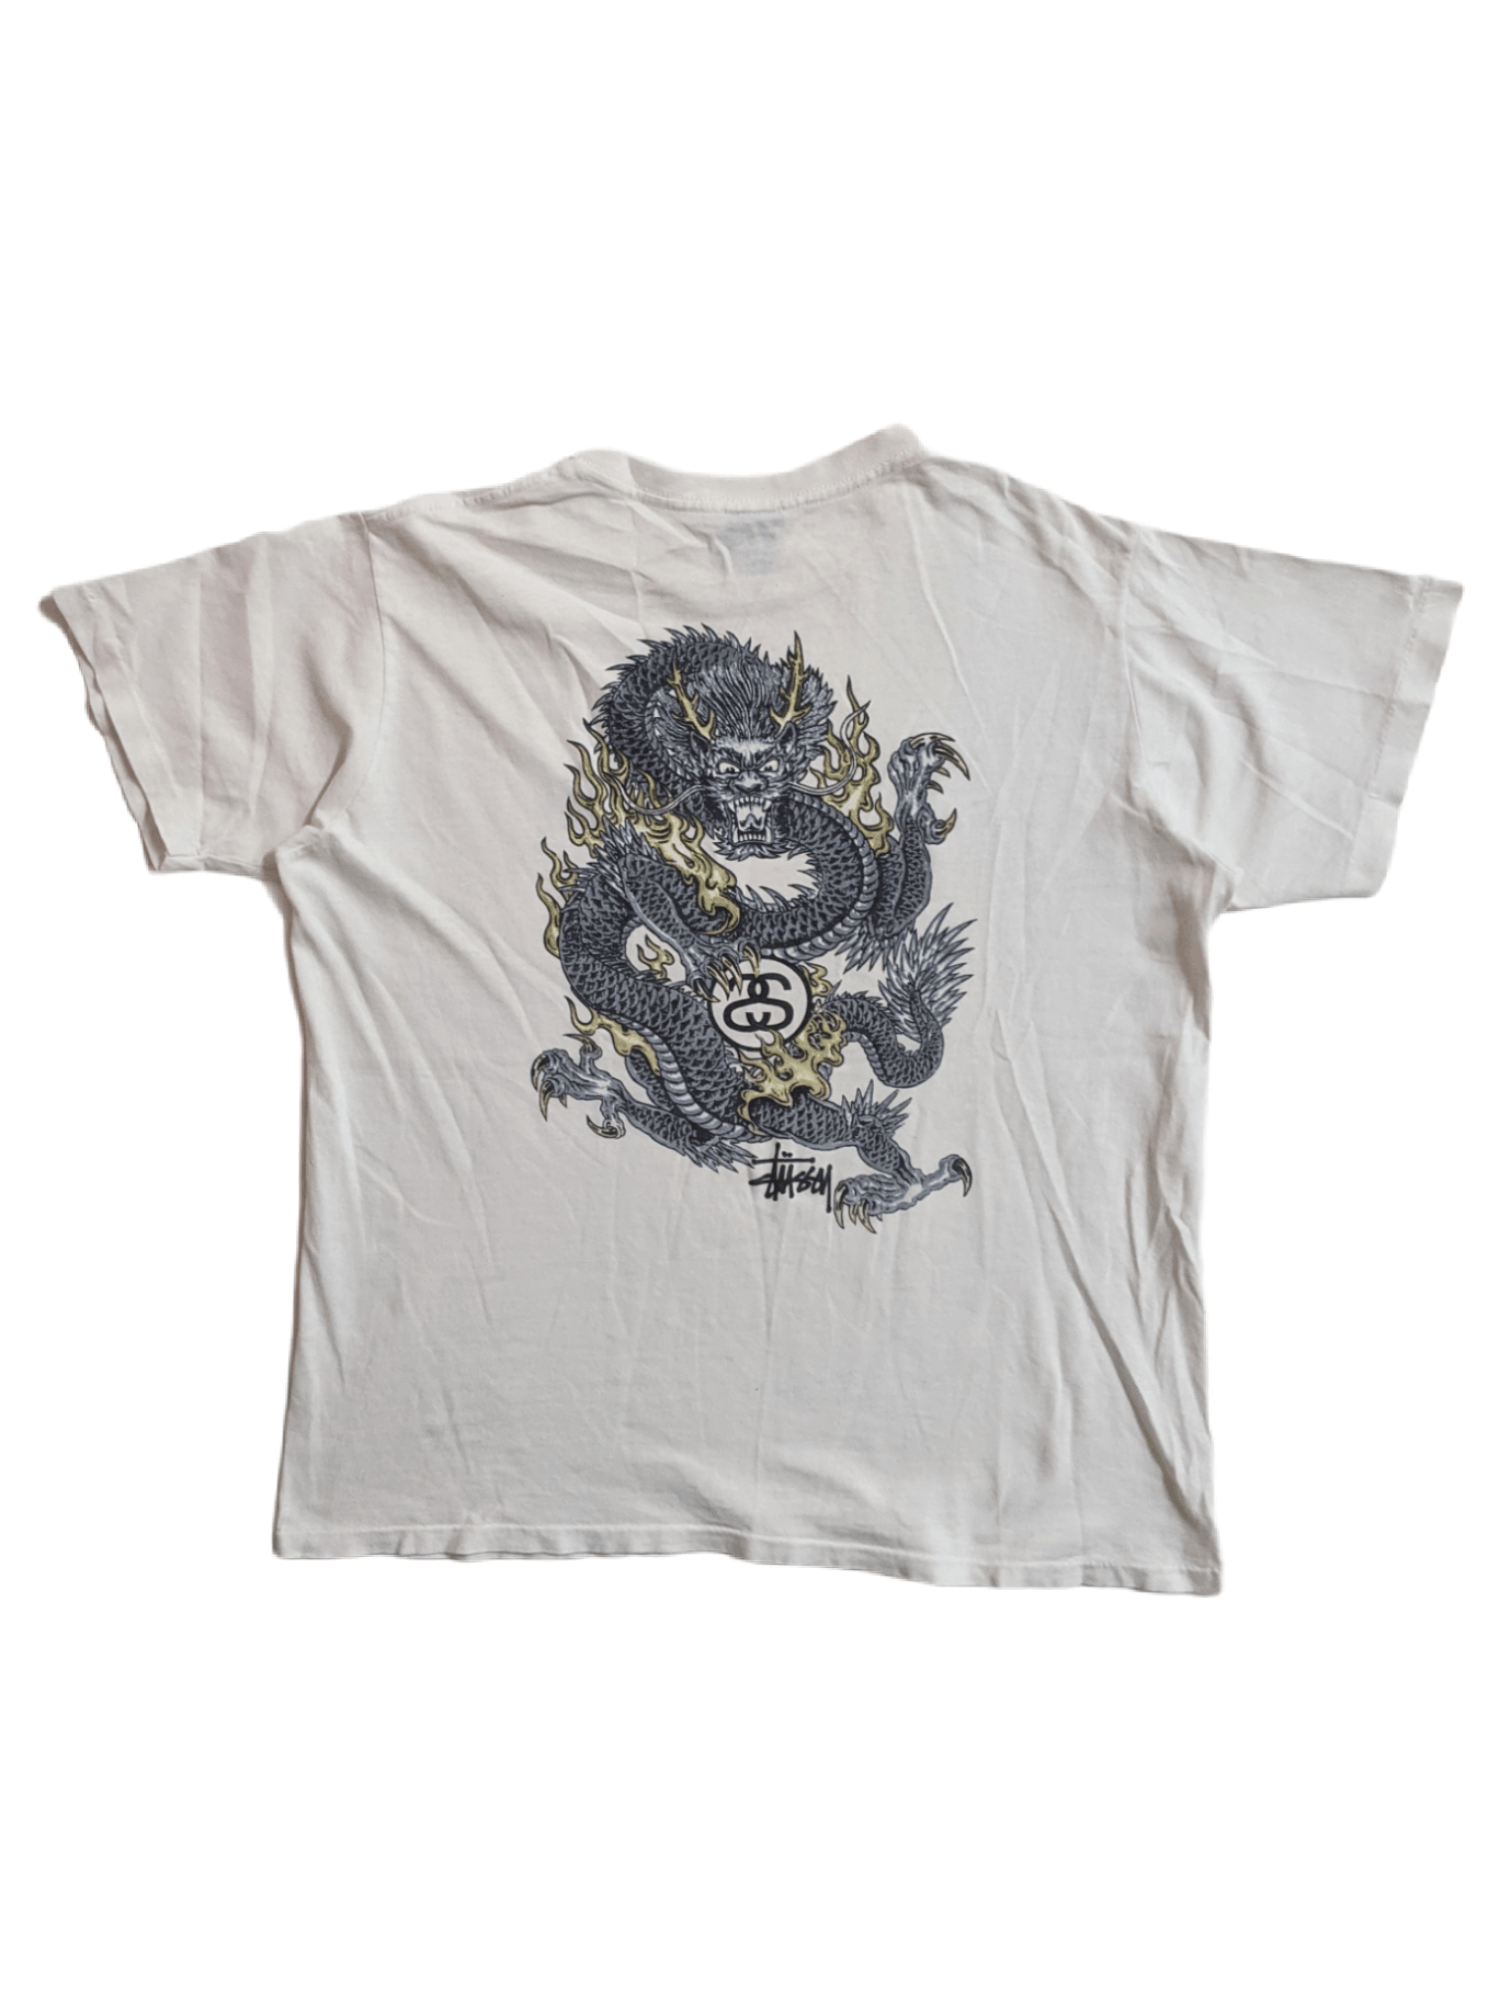 Vintage DOPE 🔥 Vintage Stussy Dragon T-shirt | Grailed